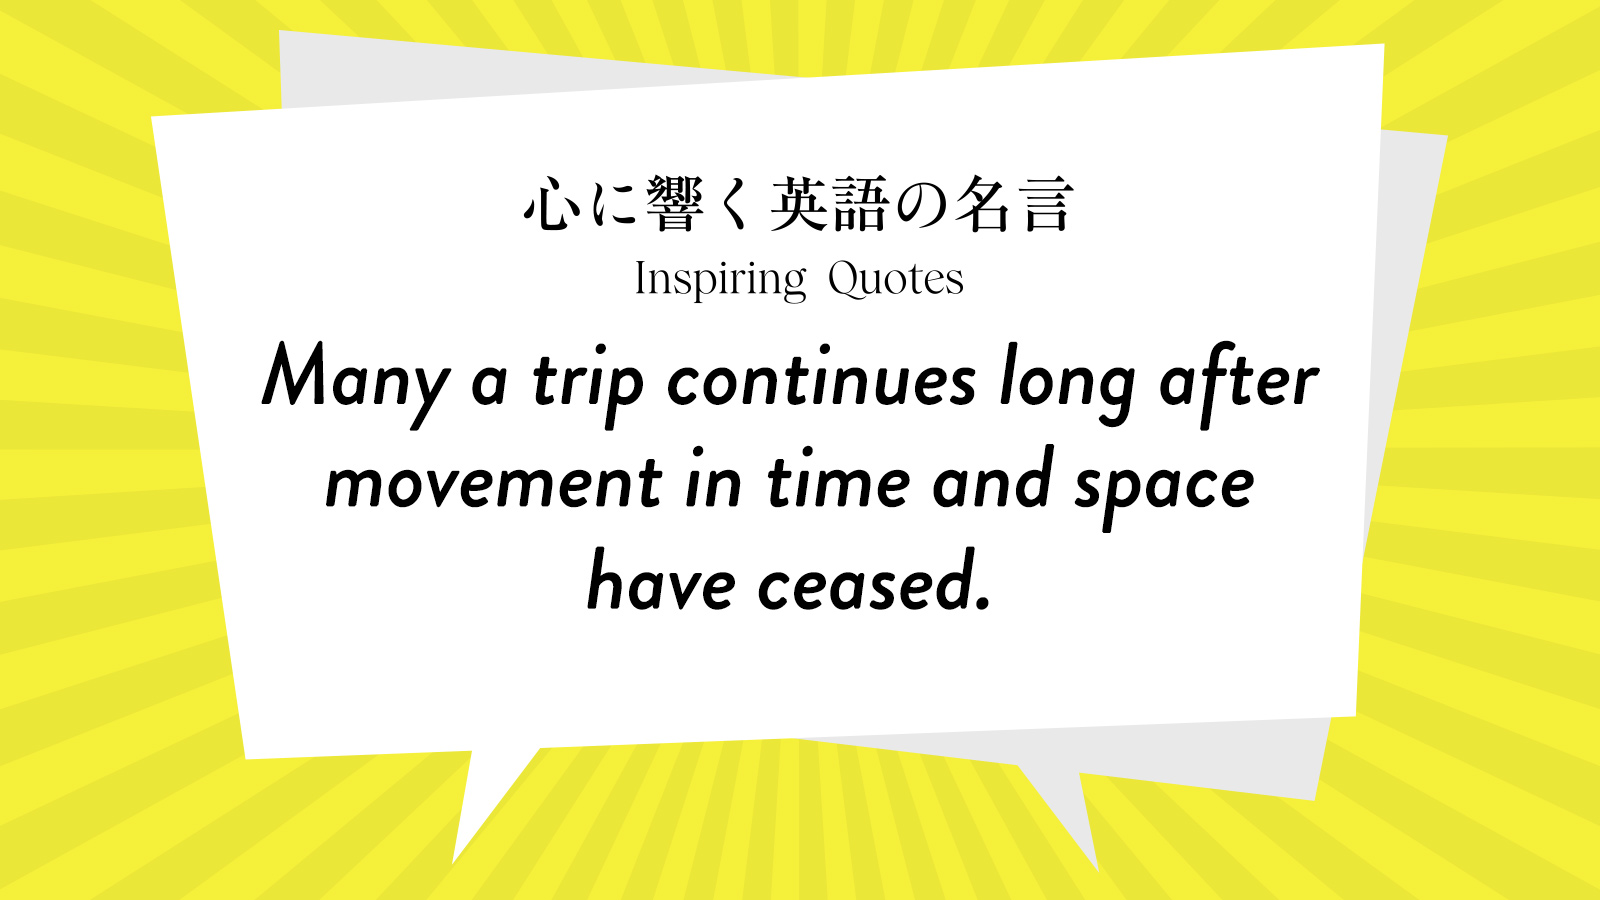 今週の名言 “Many a trip continues long after movement in time and space have ceased.” | Inspiring Quotes: 心に響く英語の名言